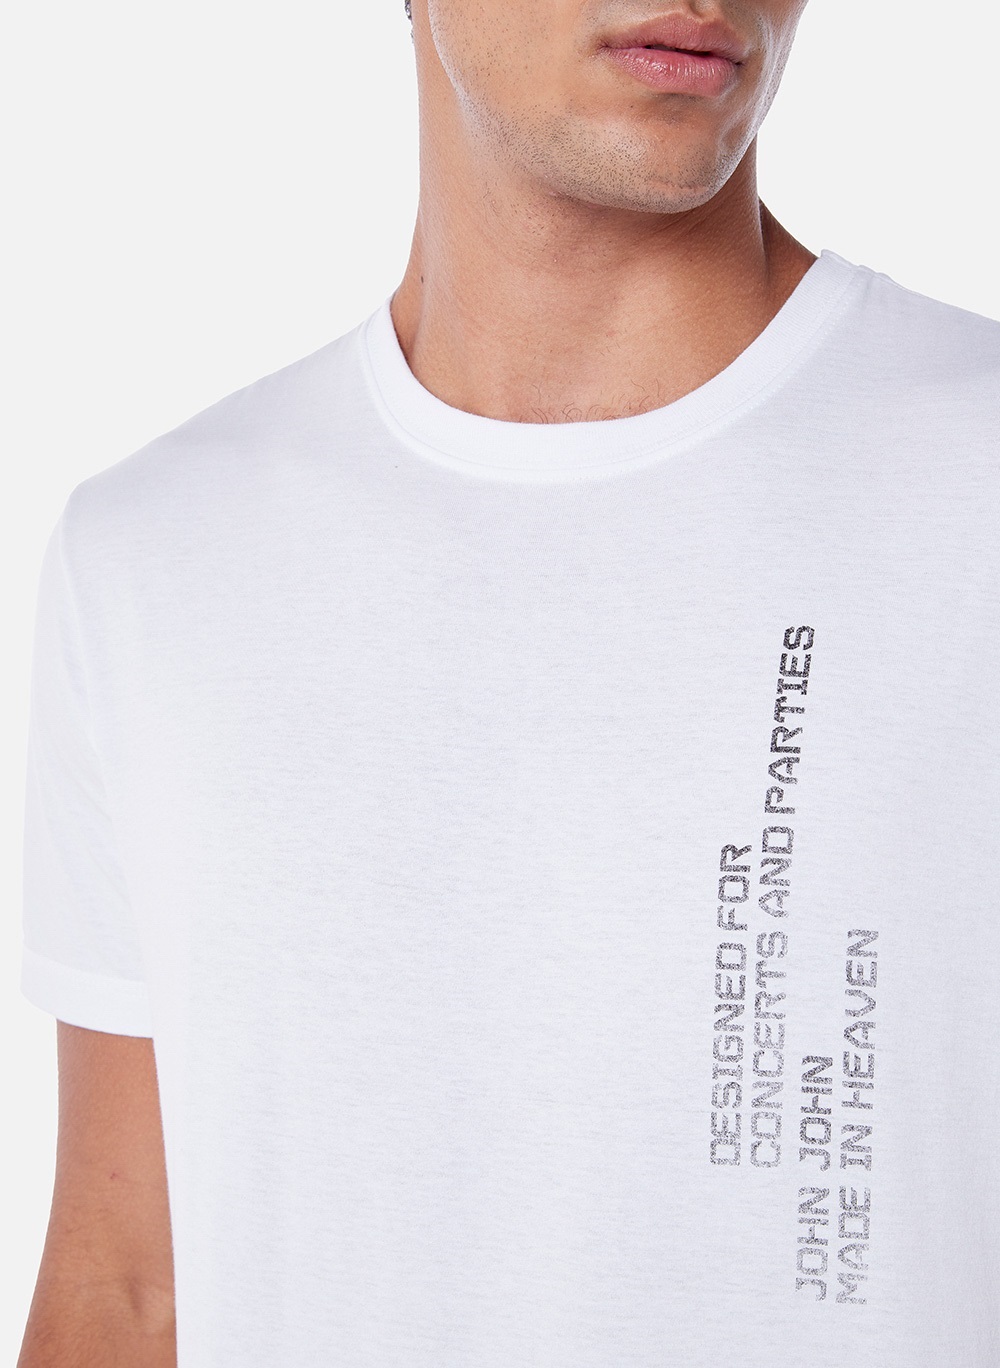 Camiseta Calvin Klein High Relief Preta - Outlet360